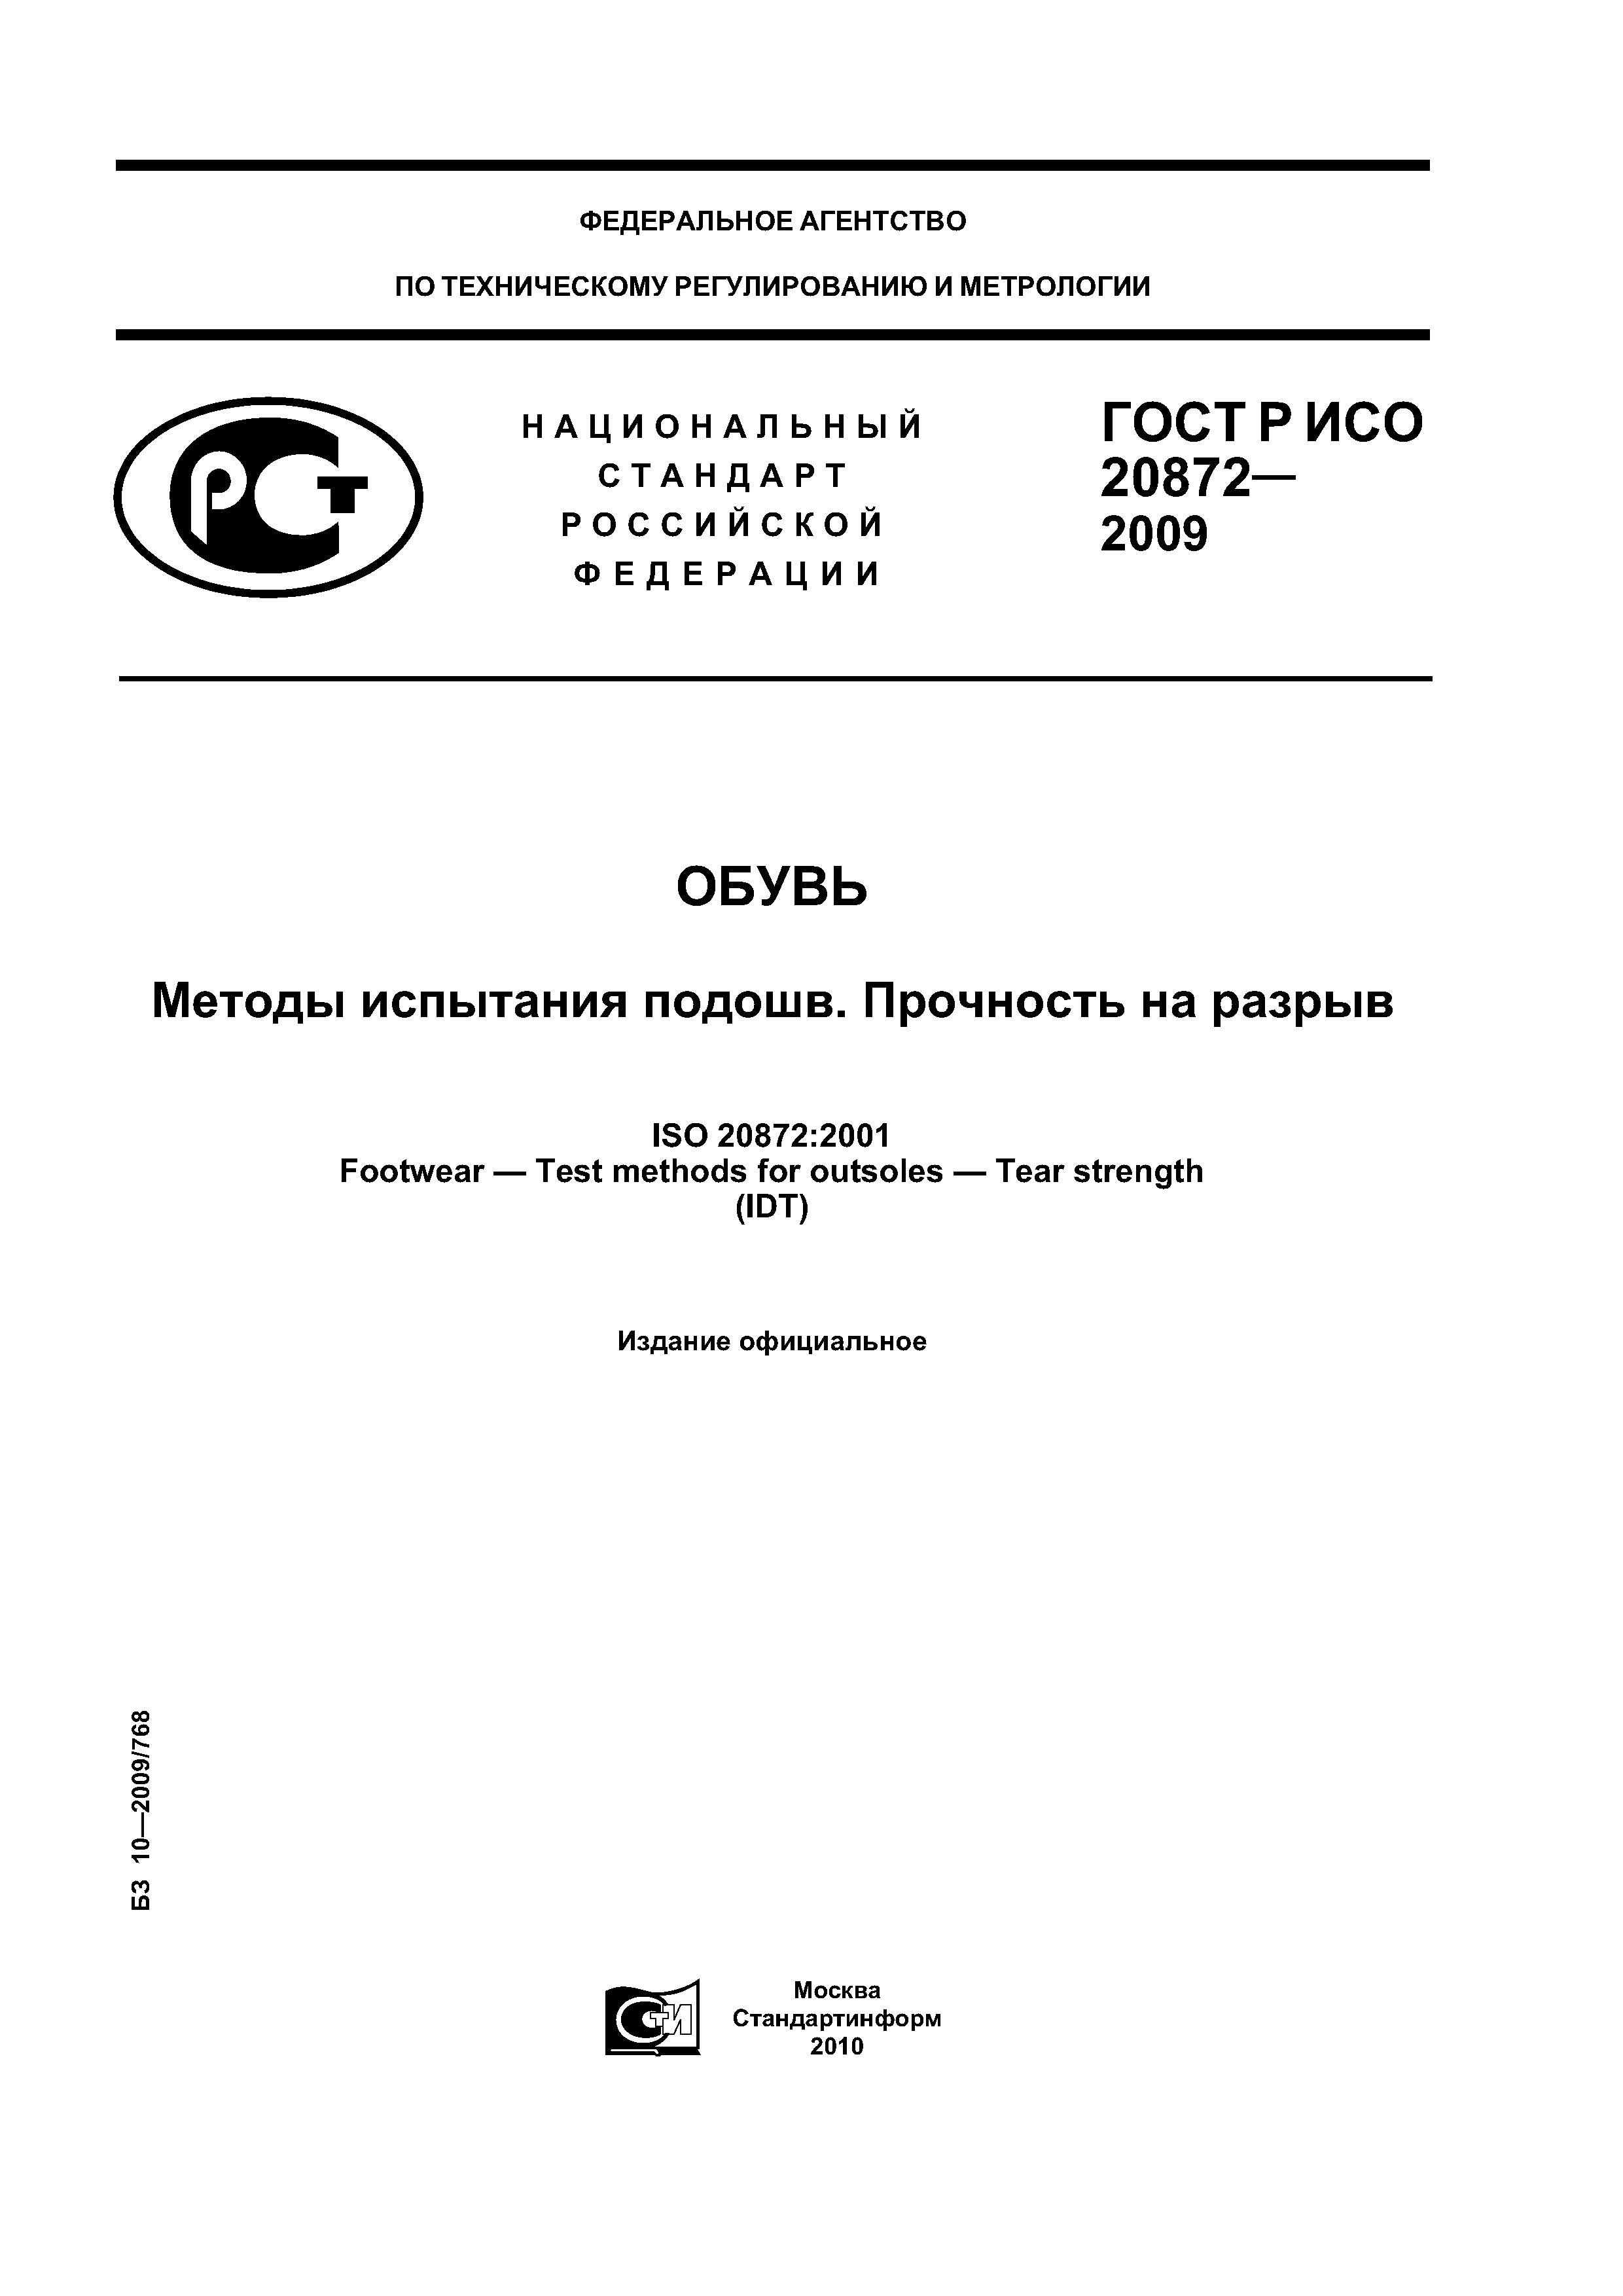 ГОСТ Р ИСО 20872-2009